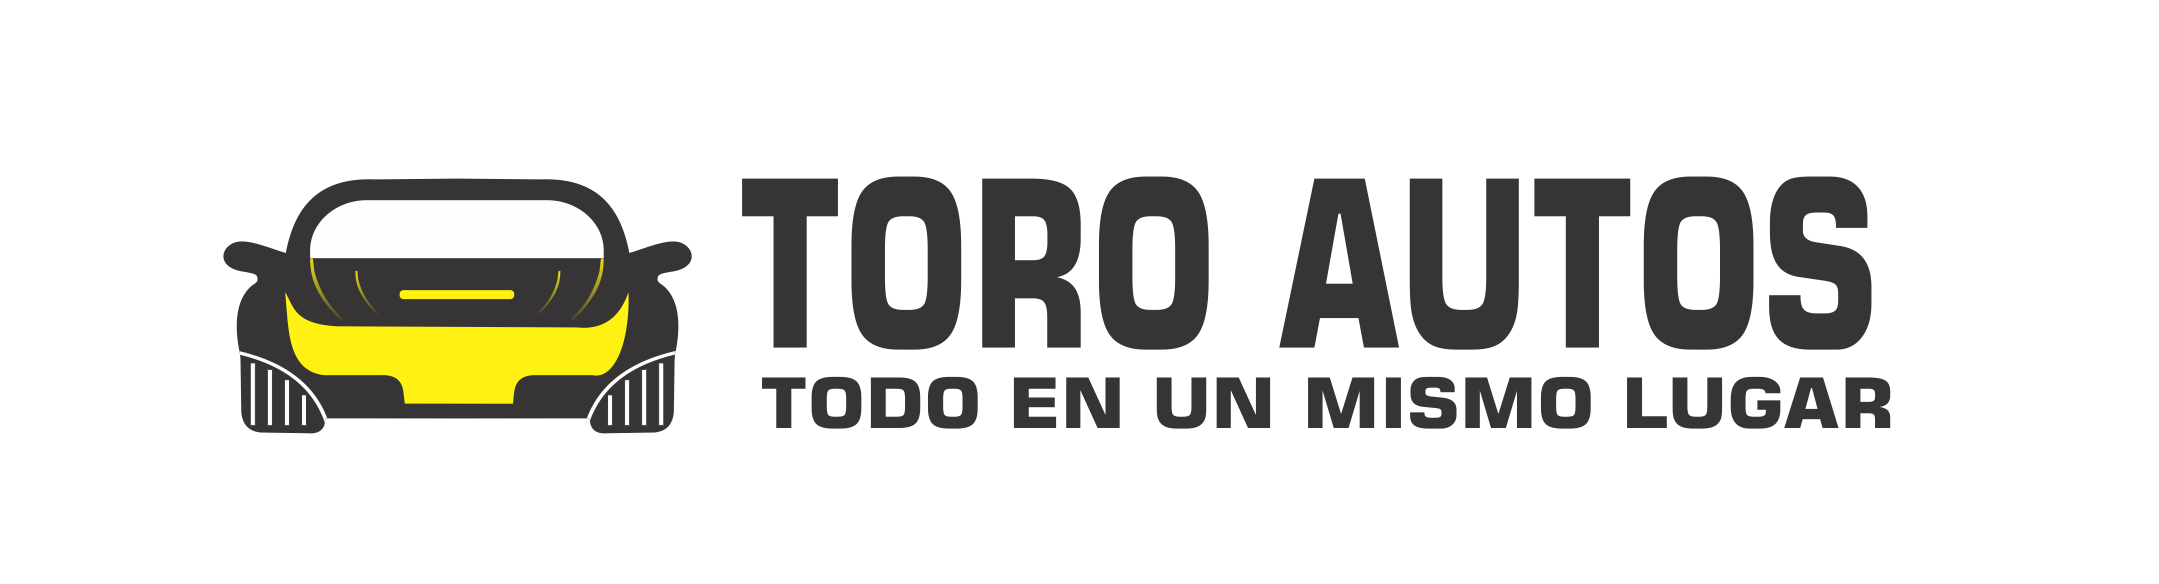 Logo TORO AUTOS SAS